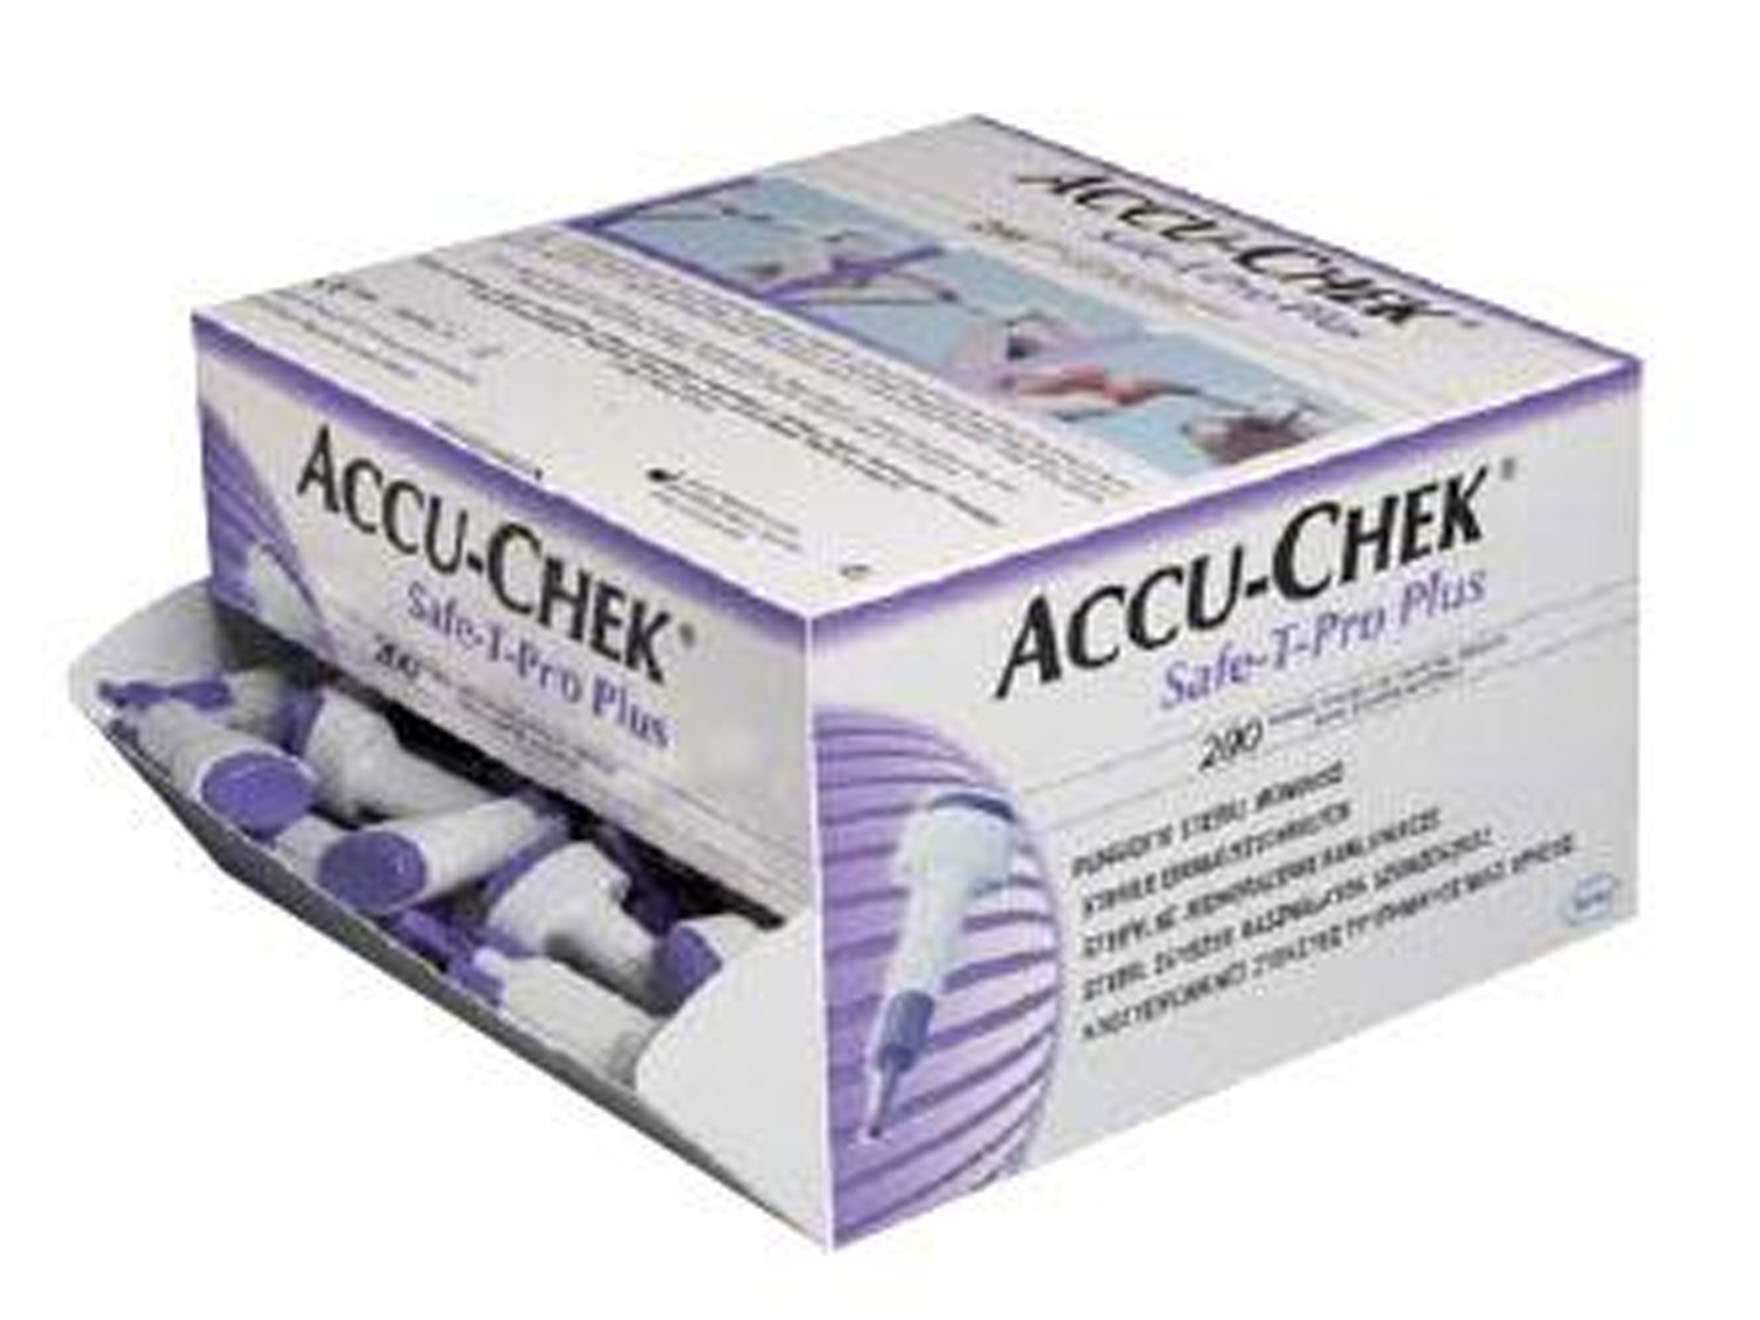 Accu-chek Safe-T-Pro Plus lancettes - 1 x 200 pcs